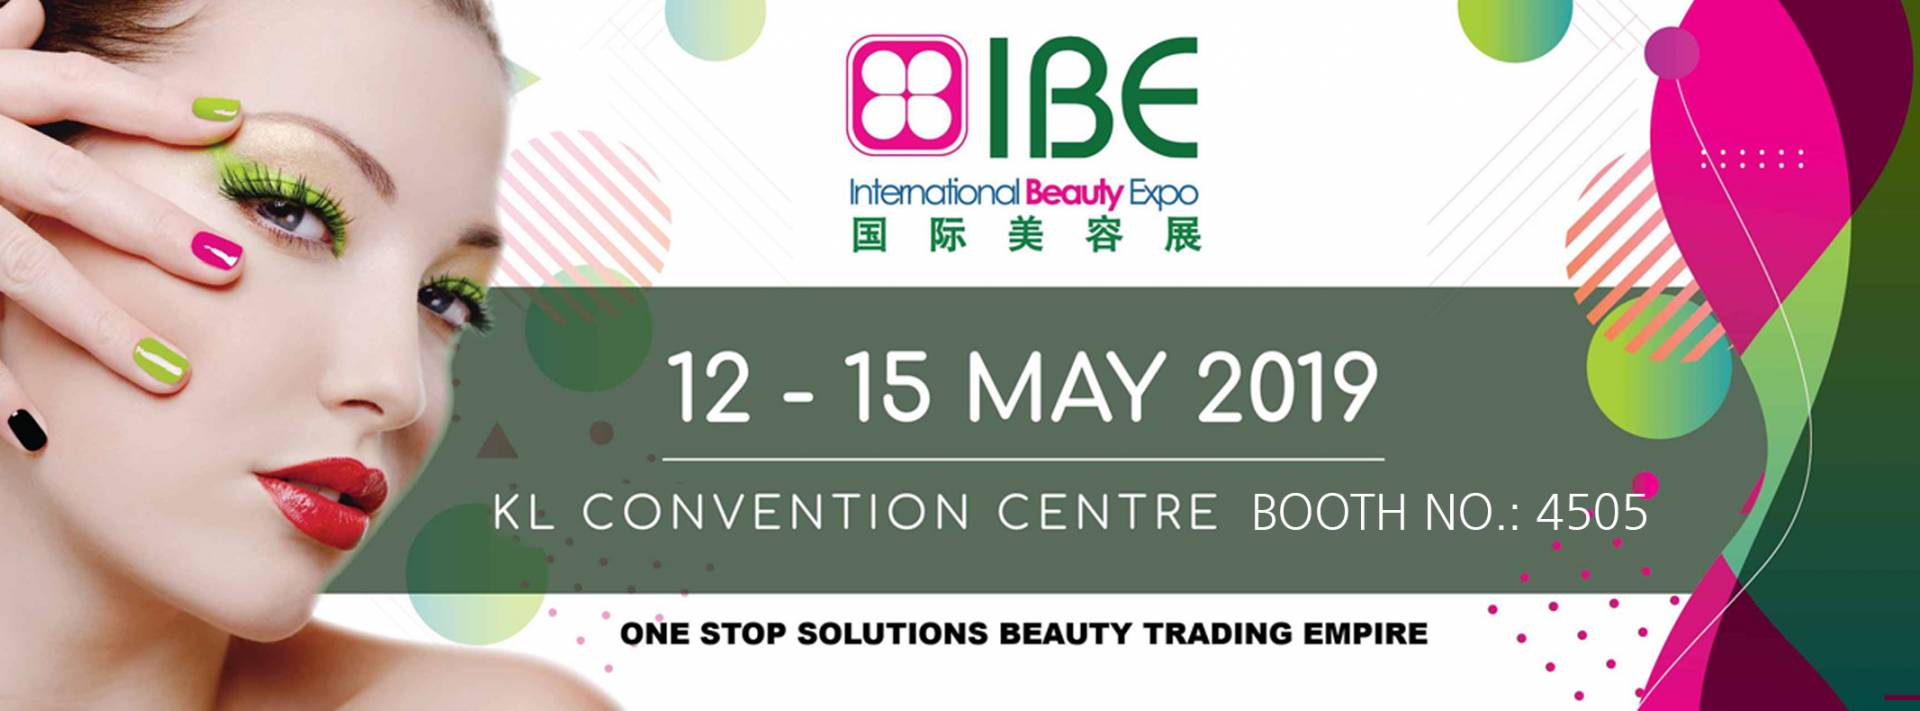 Internationale Beauty Expo Malaysia 2019